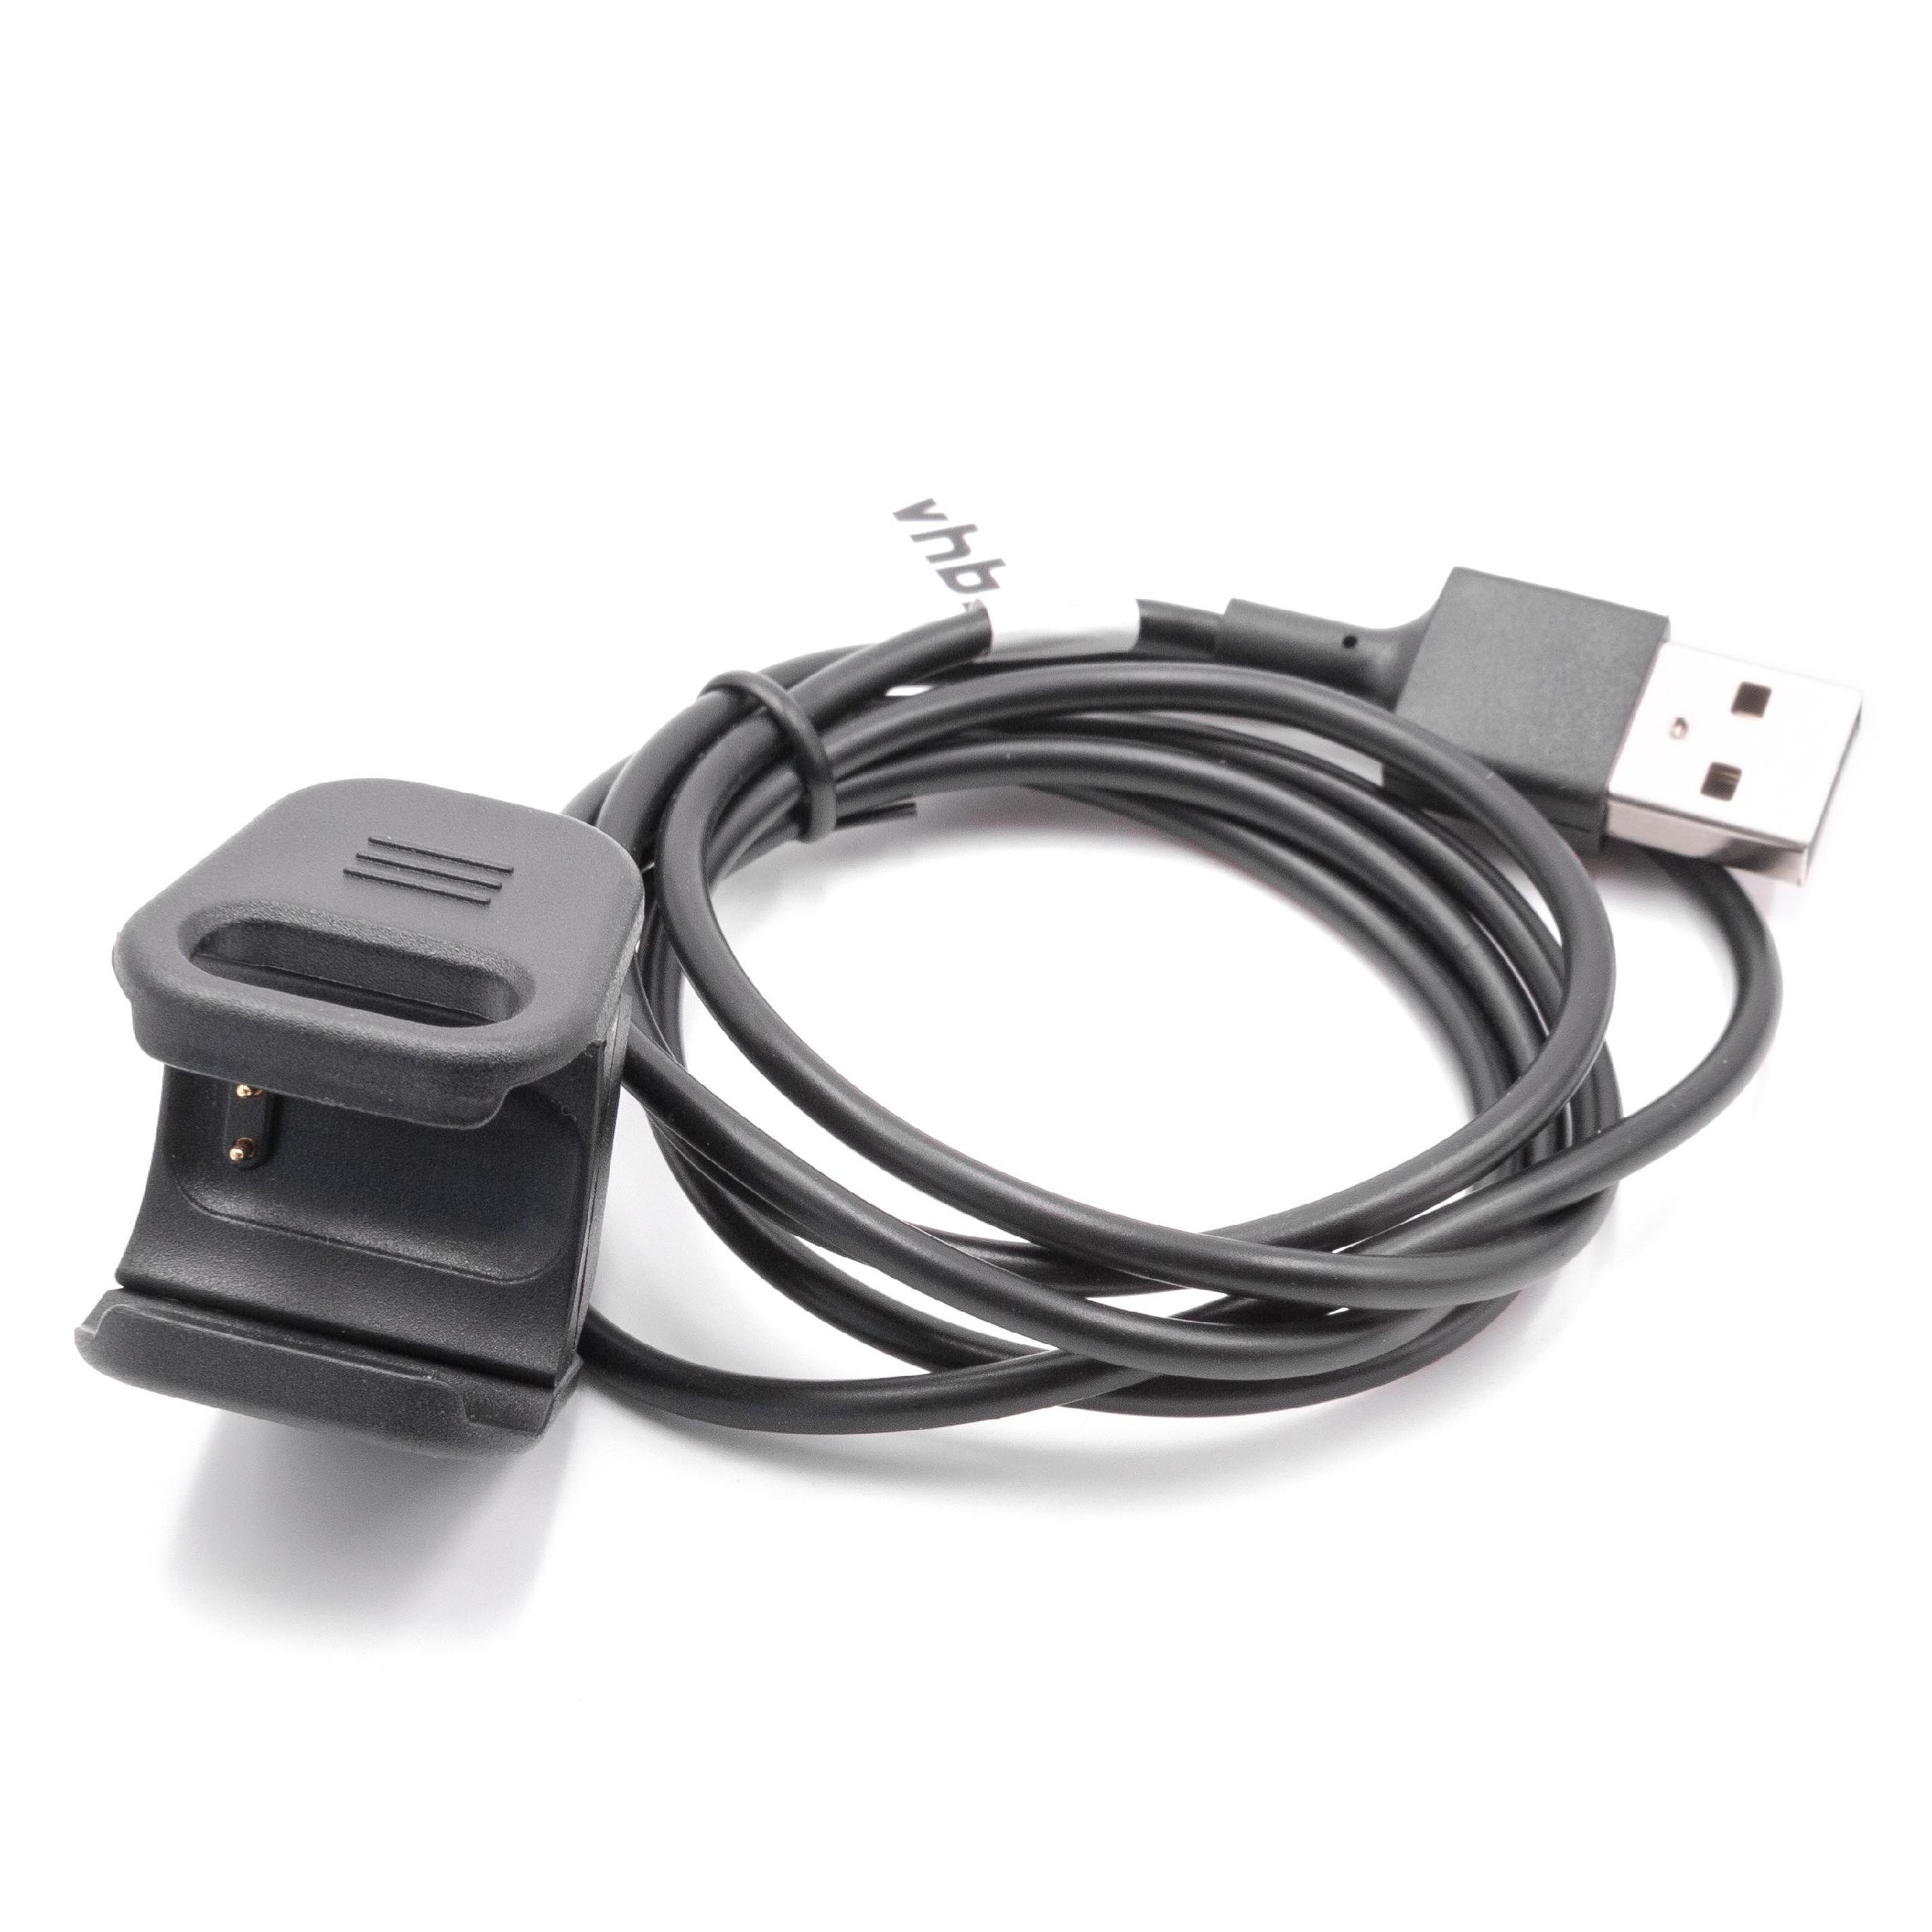 Cable de carga USB para smartwatch Fitbit Charge 3 - negro 97 cm